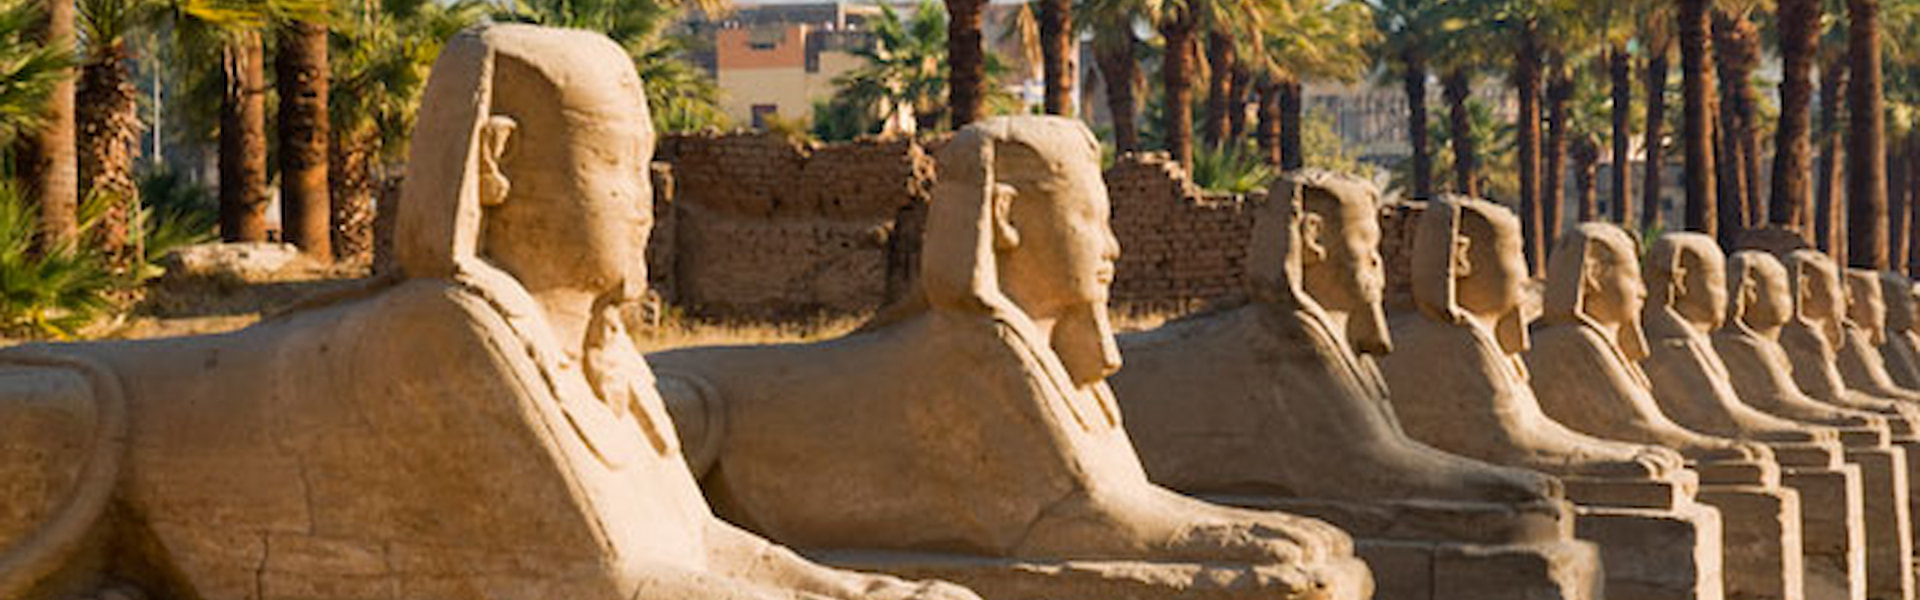 Egypt scene of eternal nile